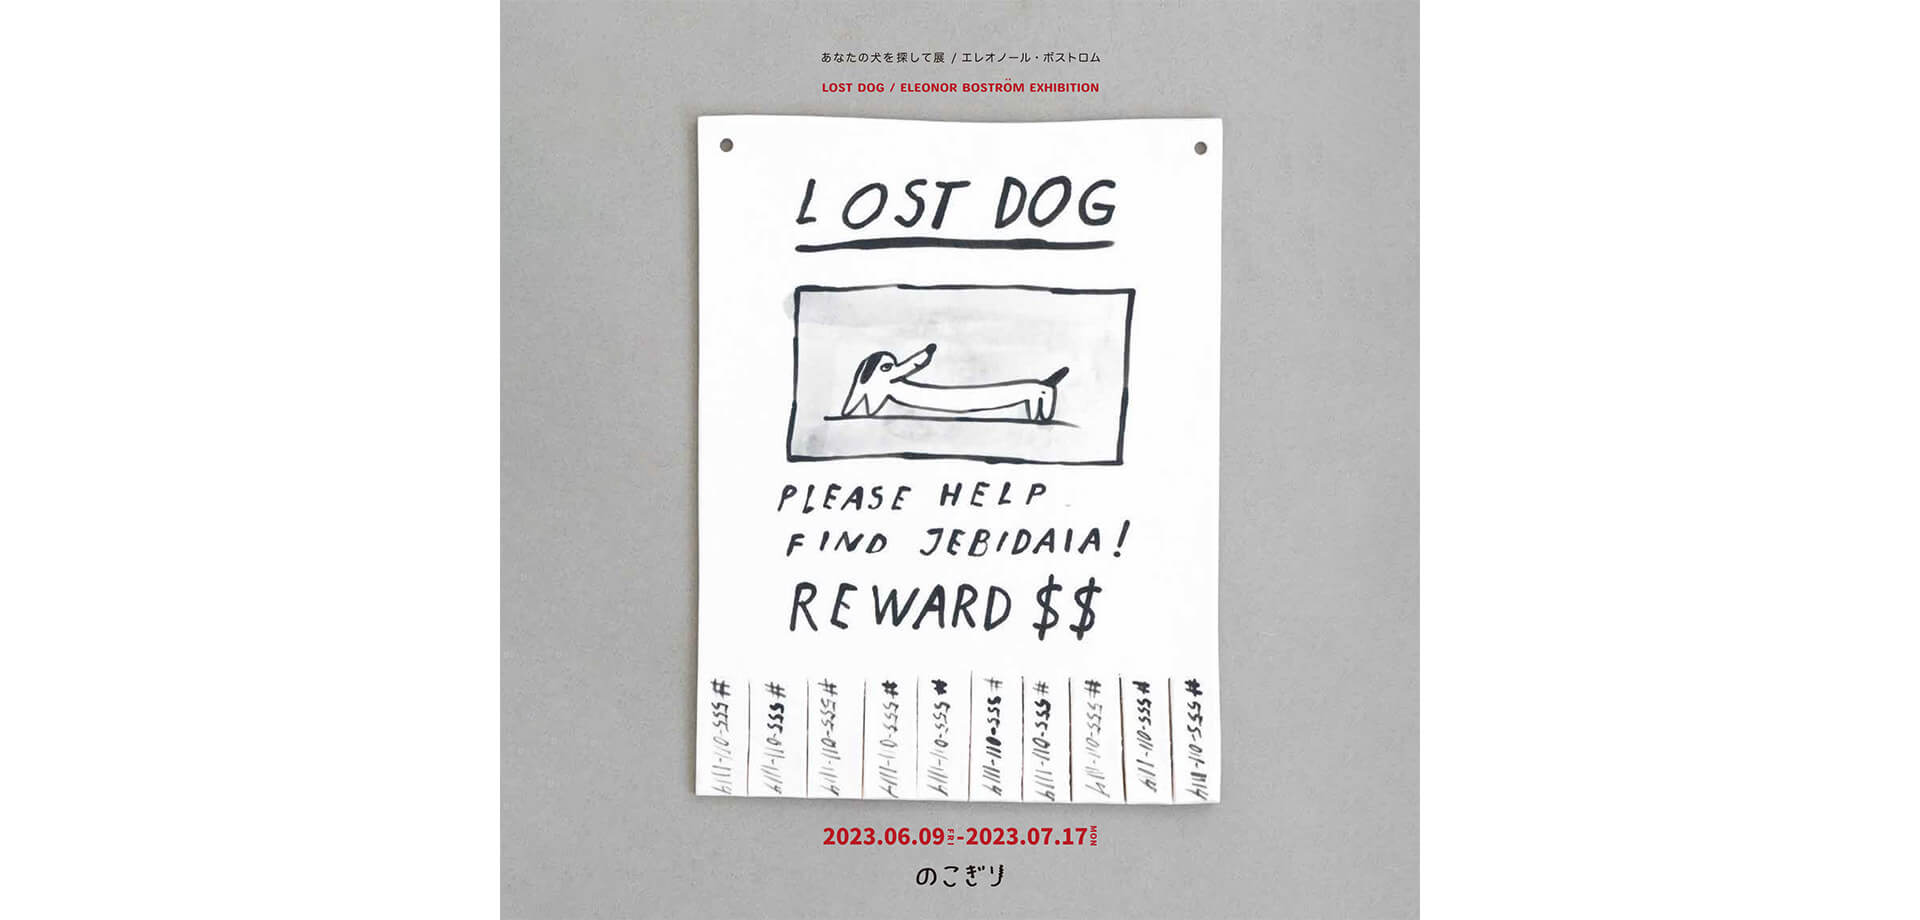 犬の作家、エレオノール・ボストロム 「あなたの犬を探して展」 渋谷